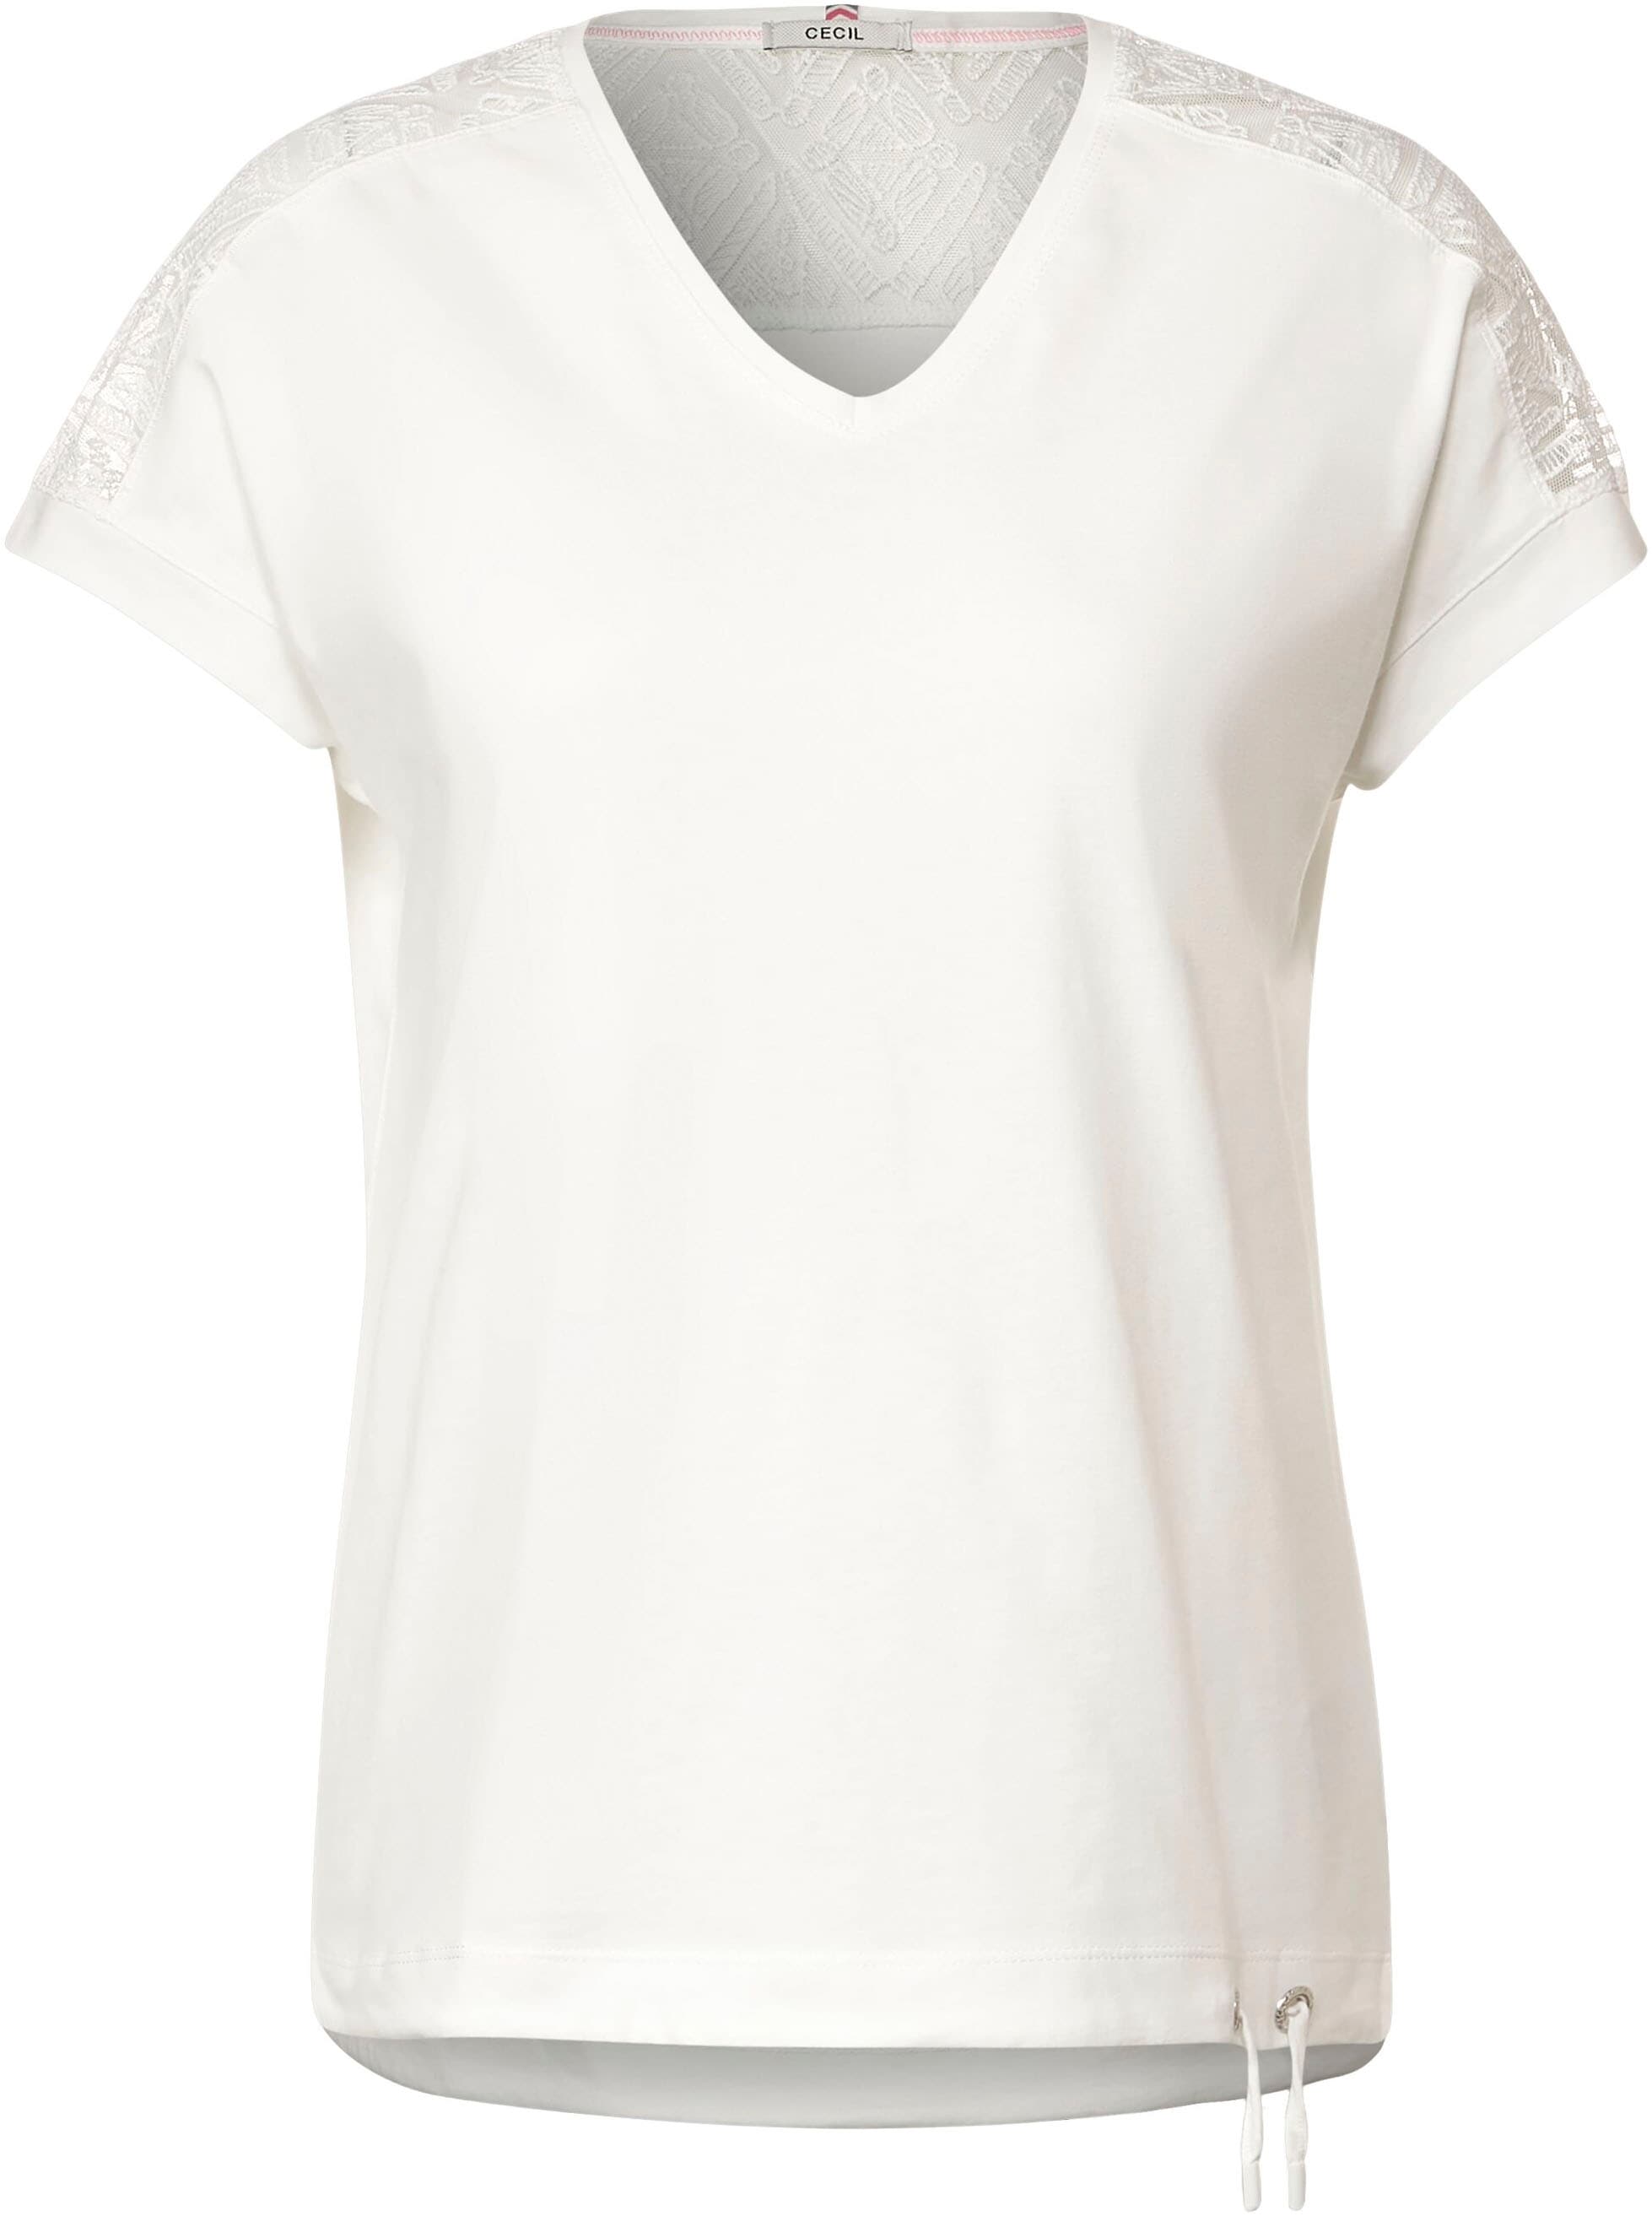 Cecil T-Shirt, mit leicht abgerundetem V -Ausschnitt bei OTTOversand